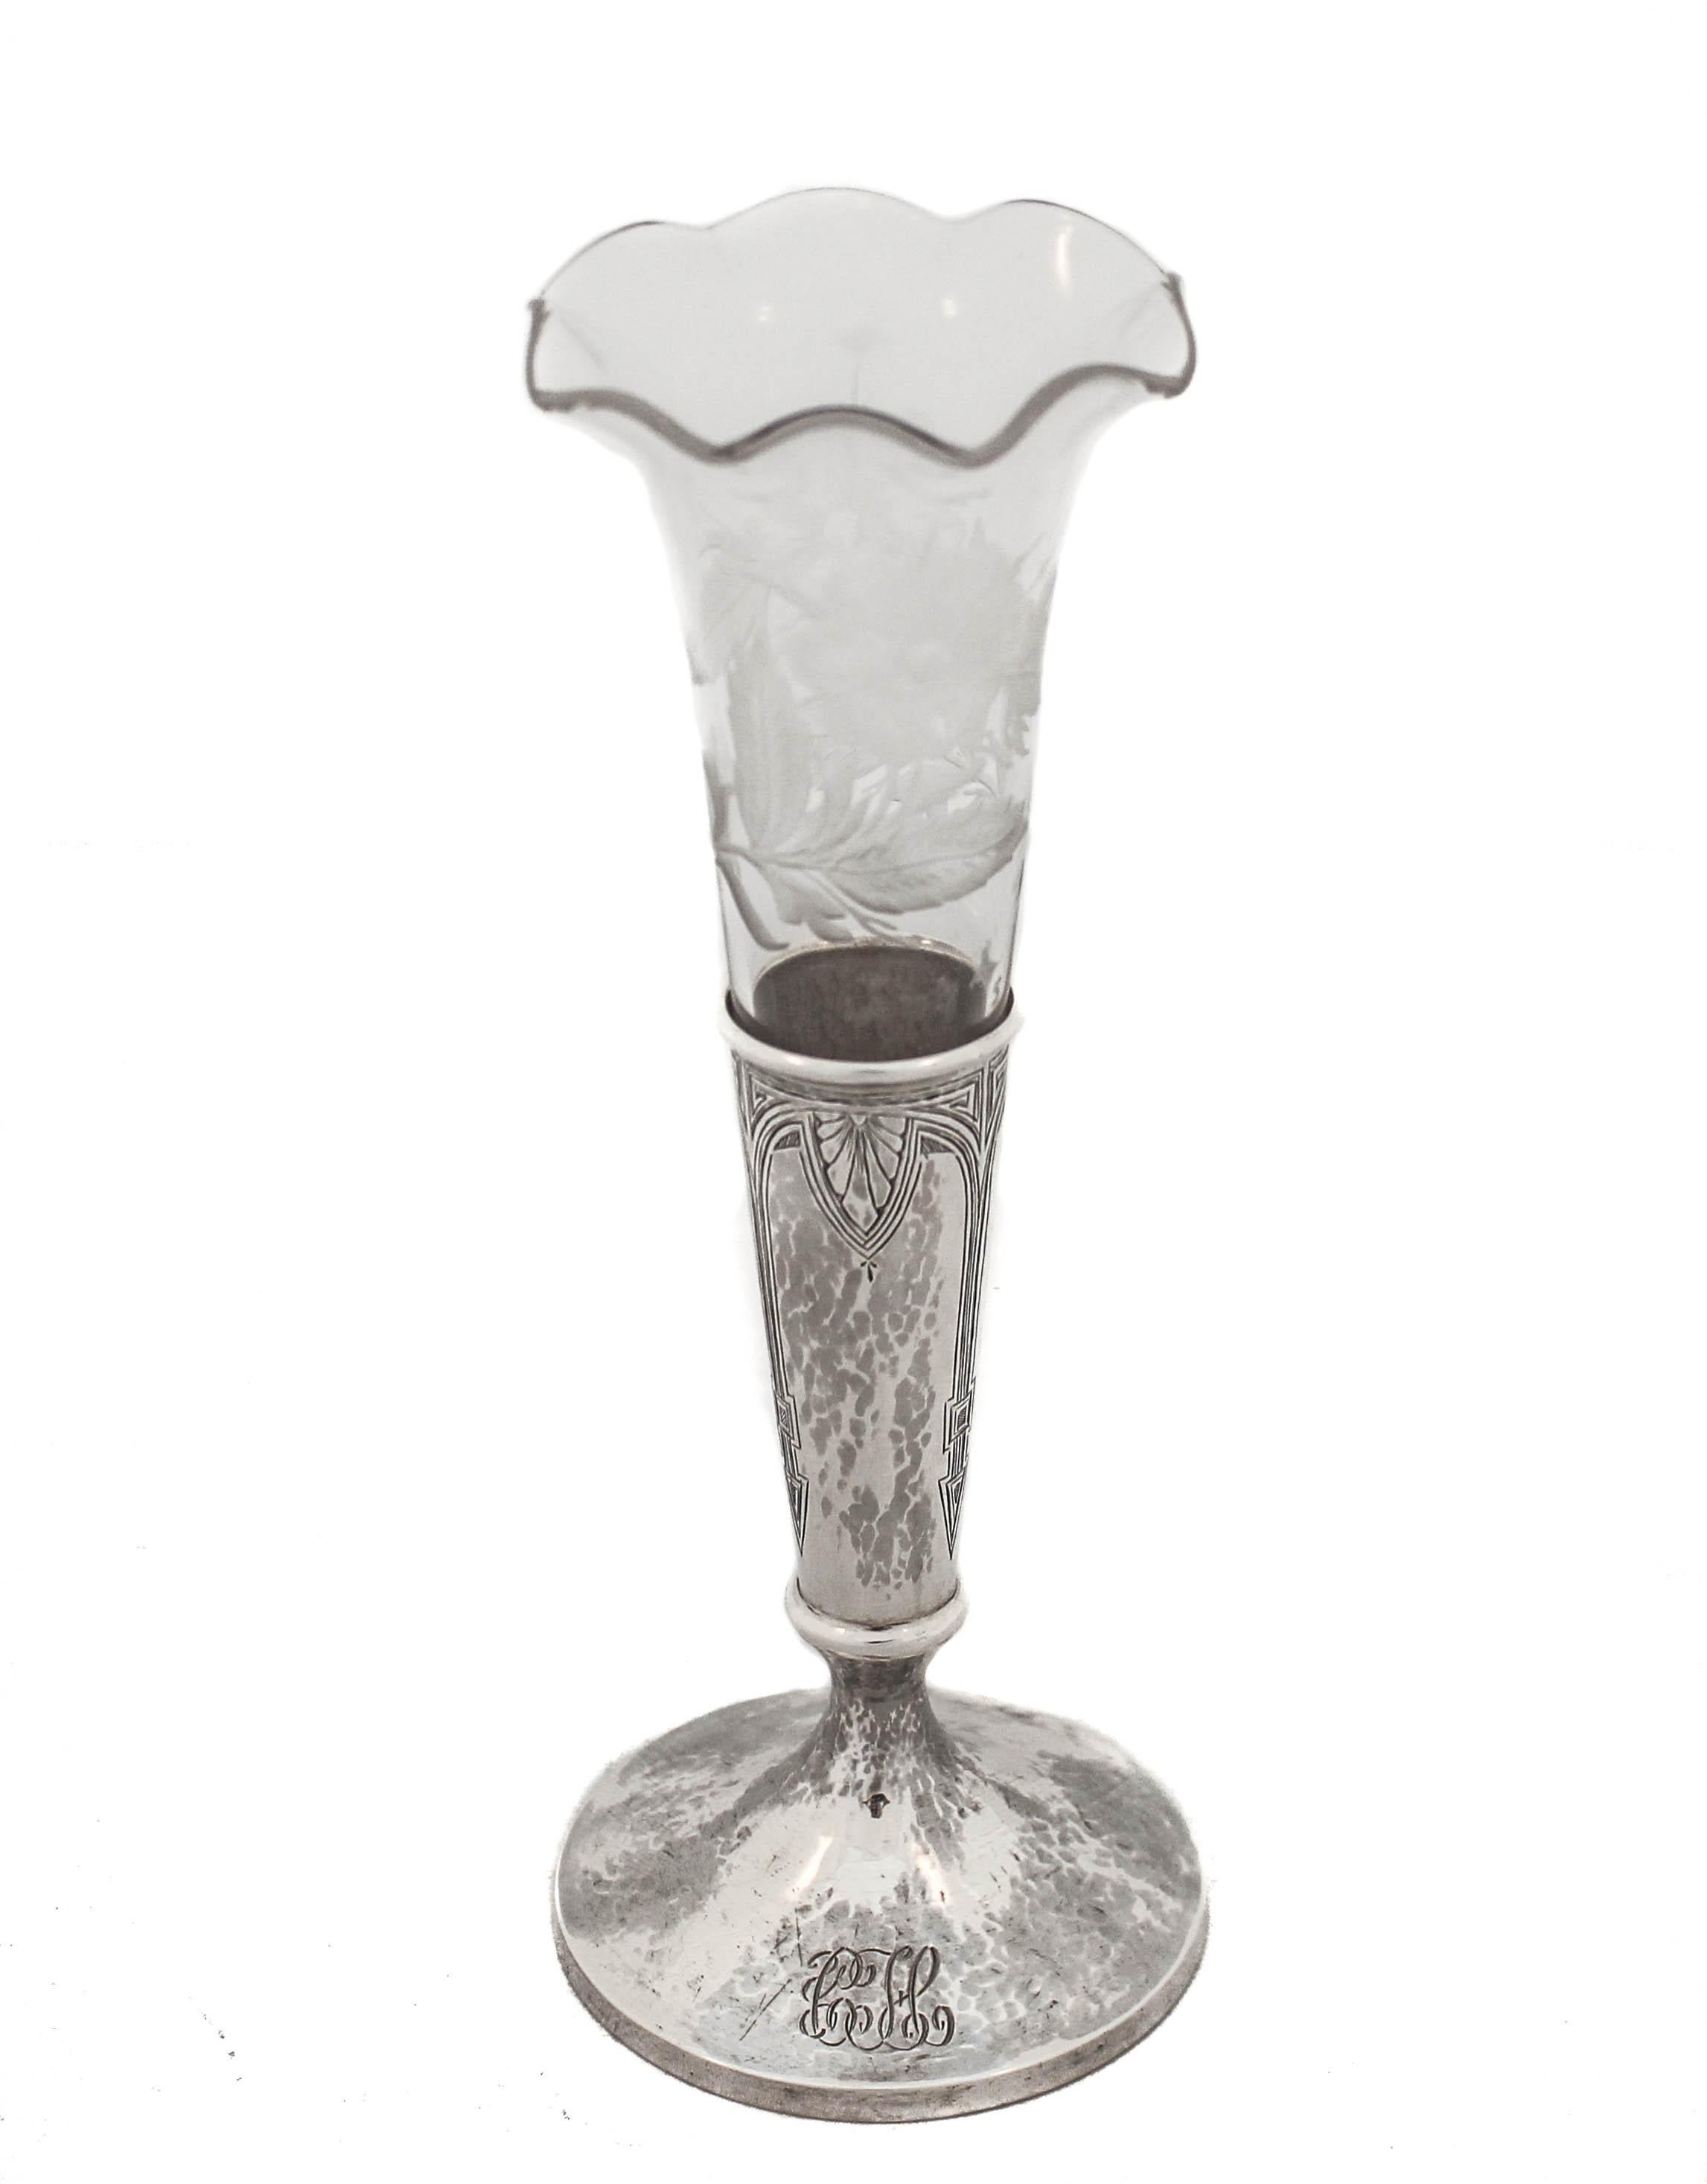 Le vase proposé est un vase à bourgeons en argent sterling avec sa doublure en verre d'origine.  Le vase en argent est conçu dans le style Art déco avec des motifs symétriques.  La doublure en verre est festonnée et comporte des fleurs et des